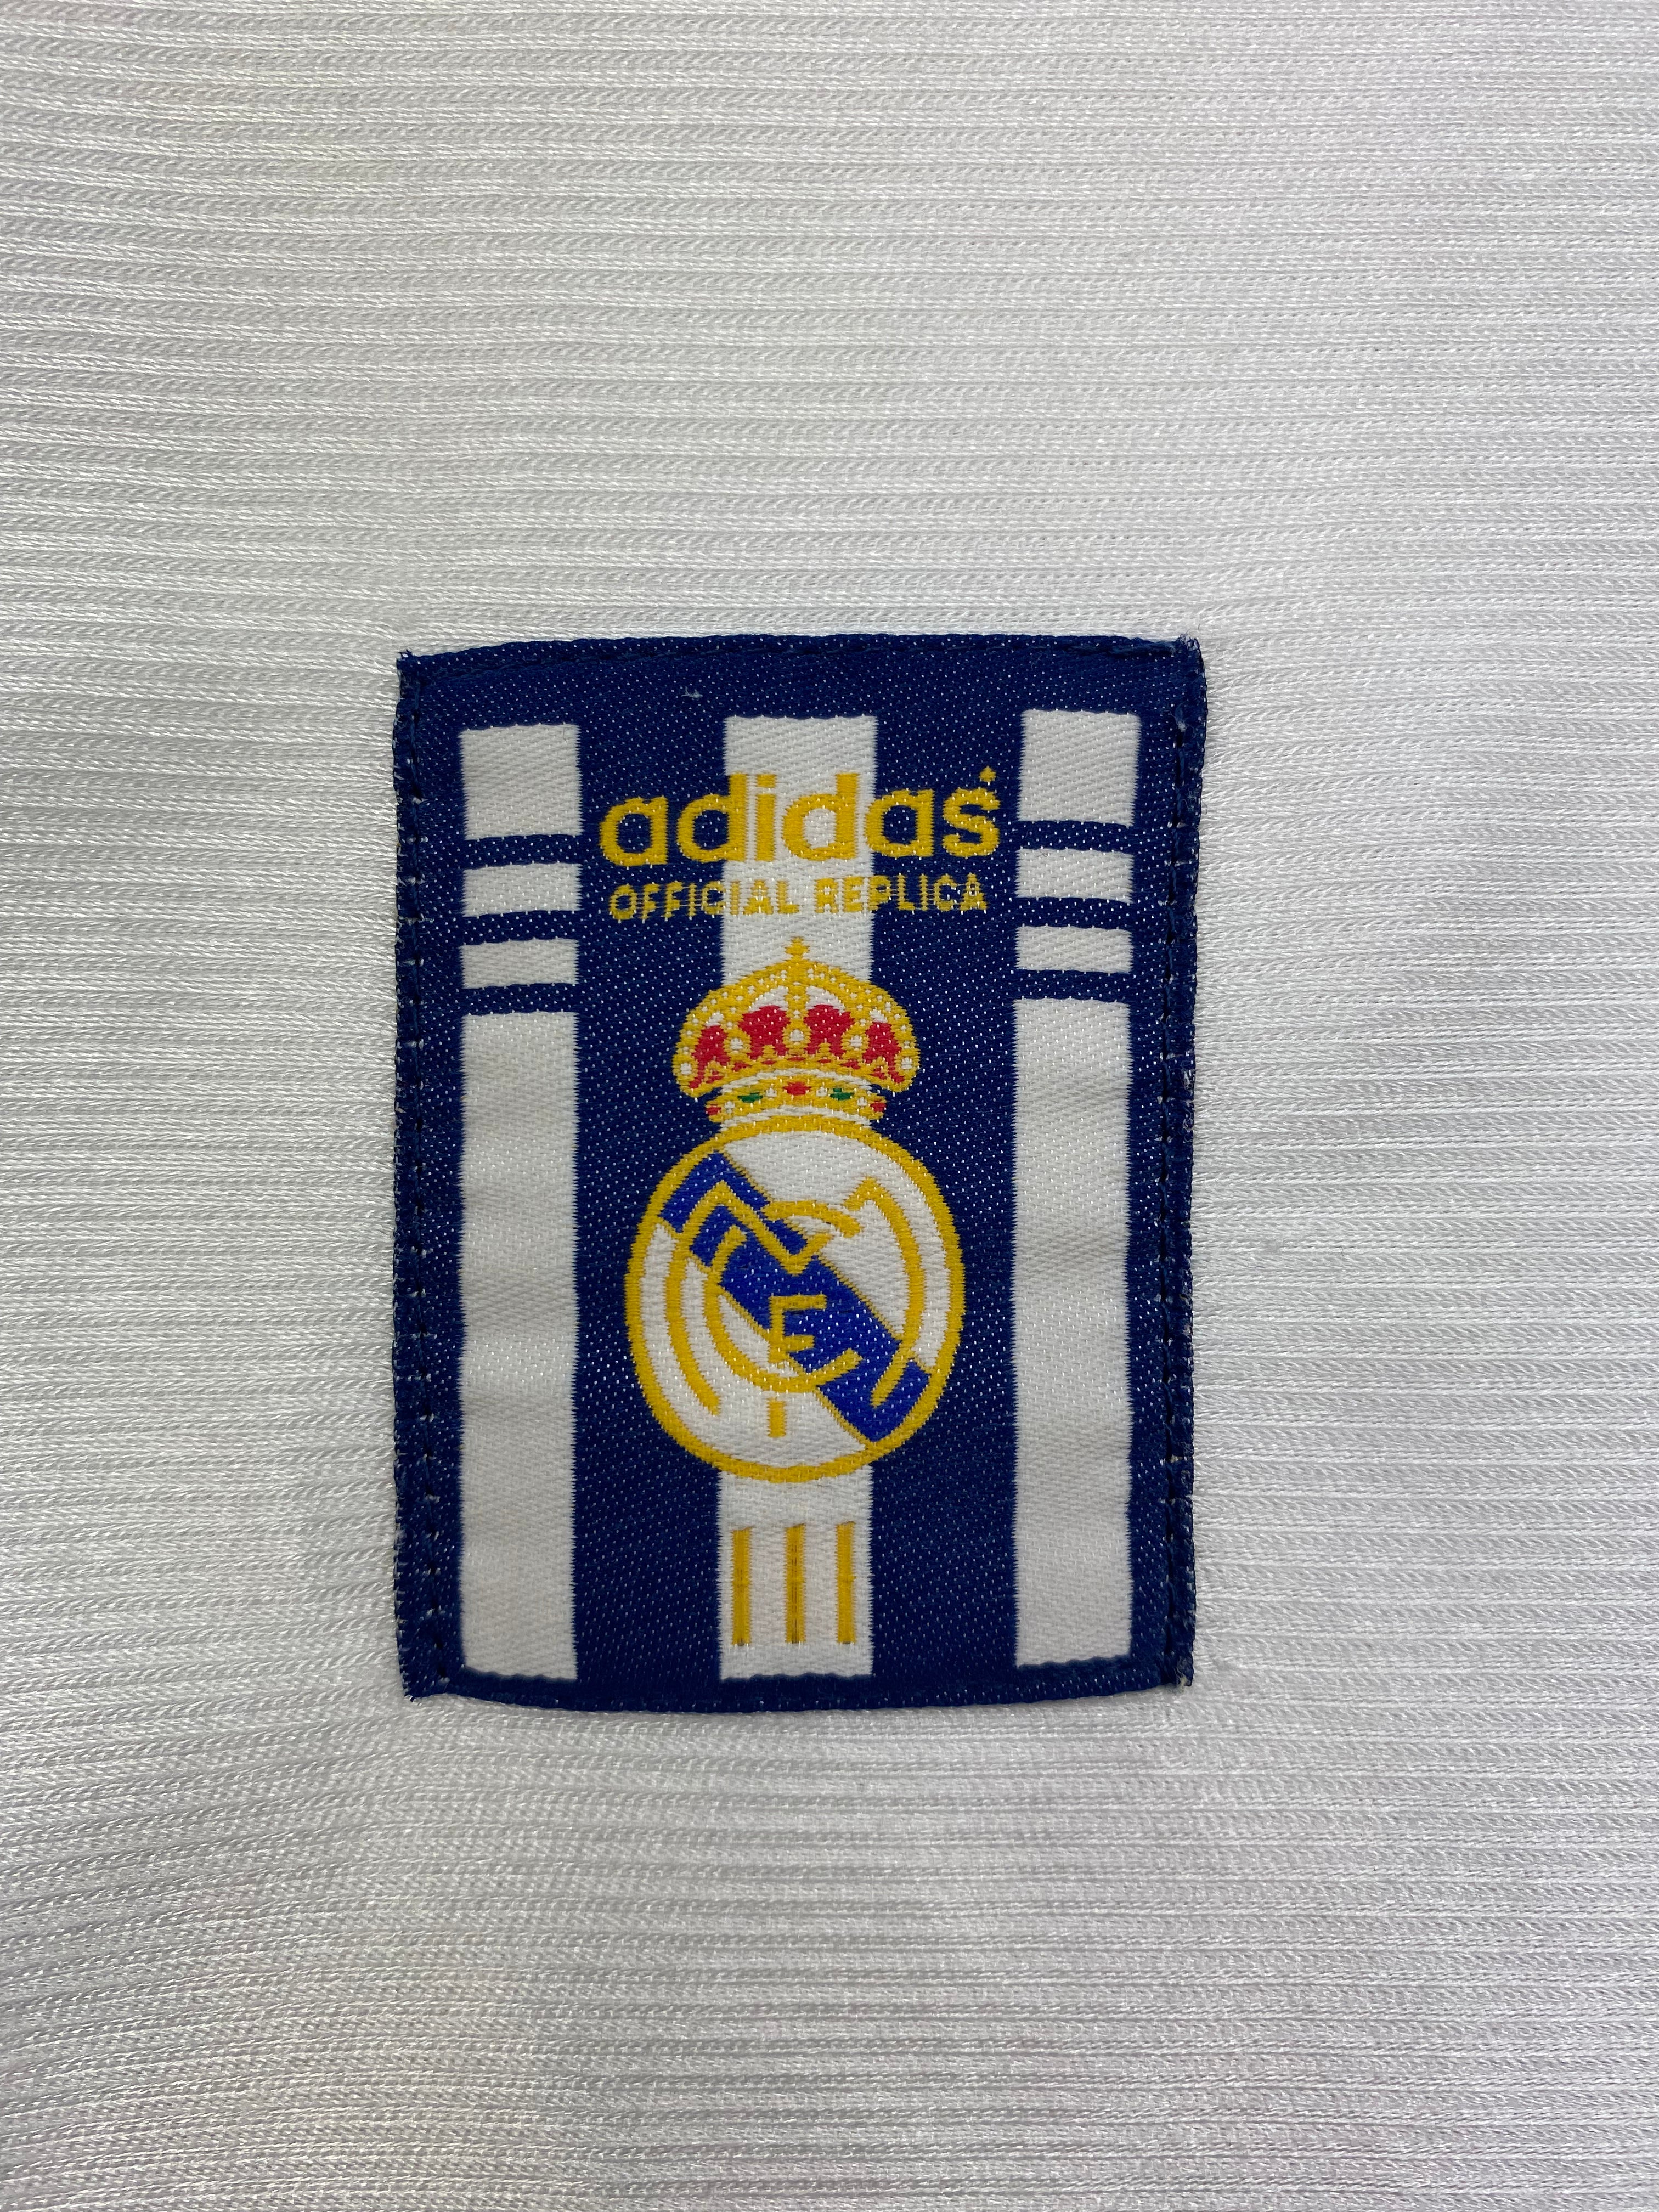 1998/00 Camiseta de local del Real Madrid (M) 8.5/10